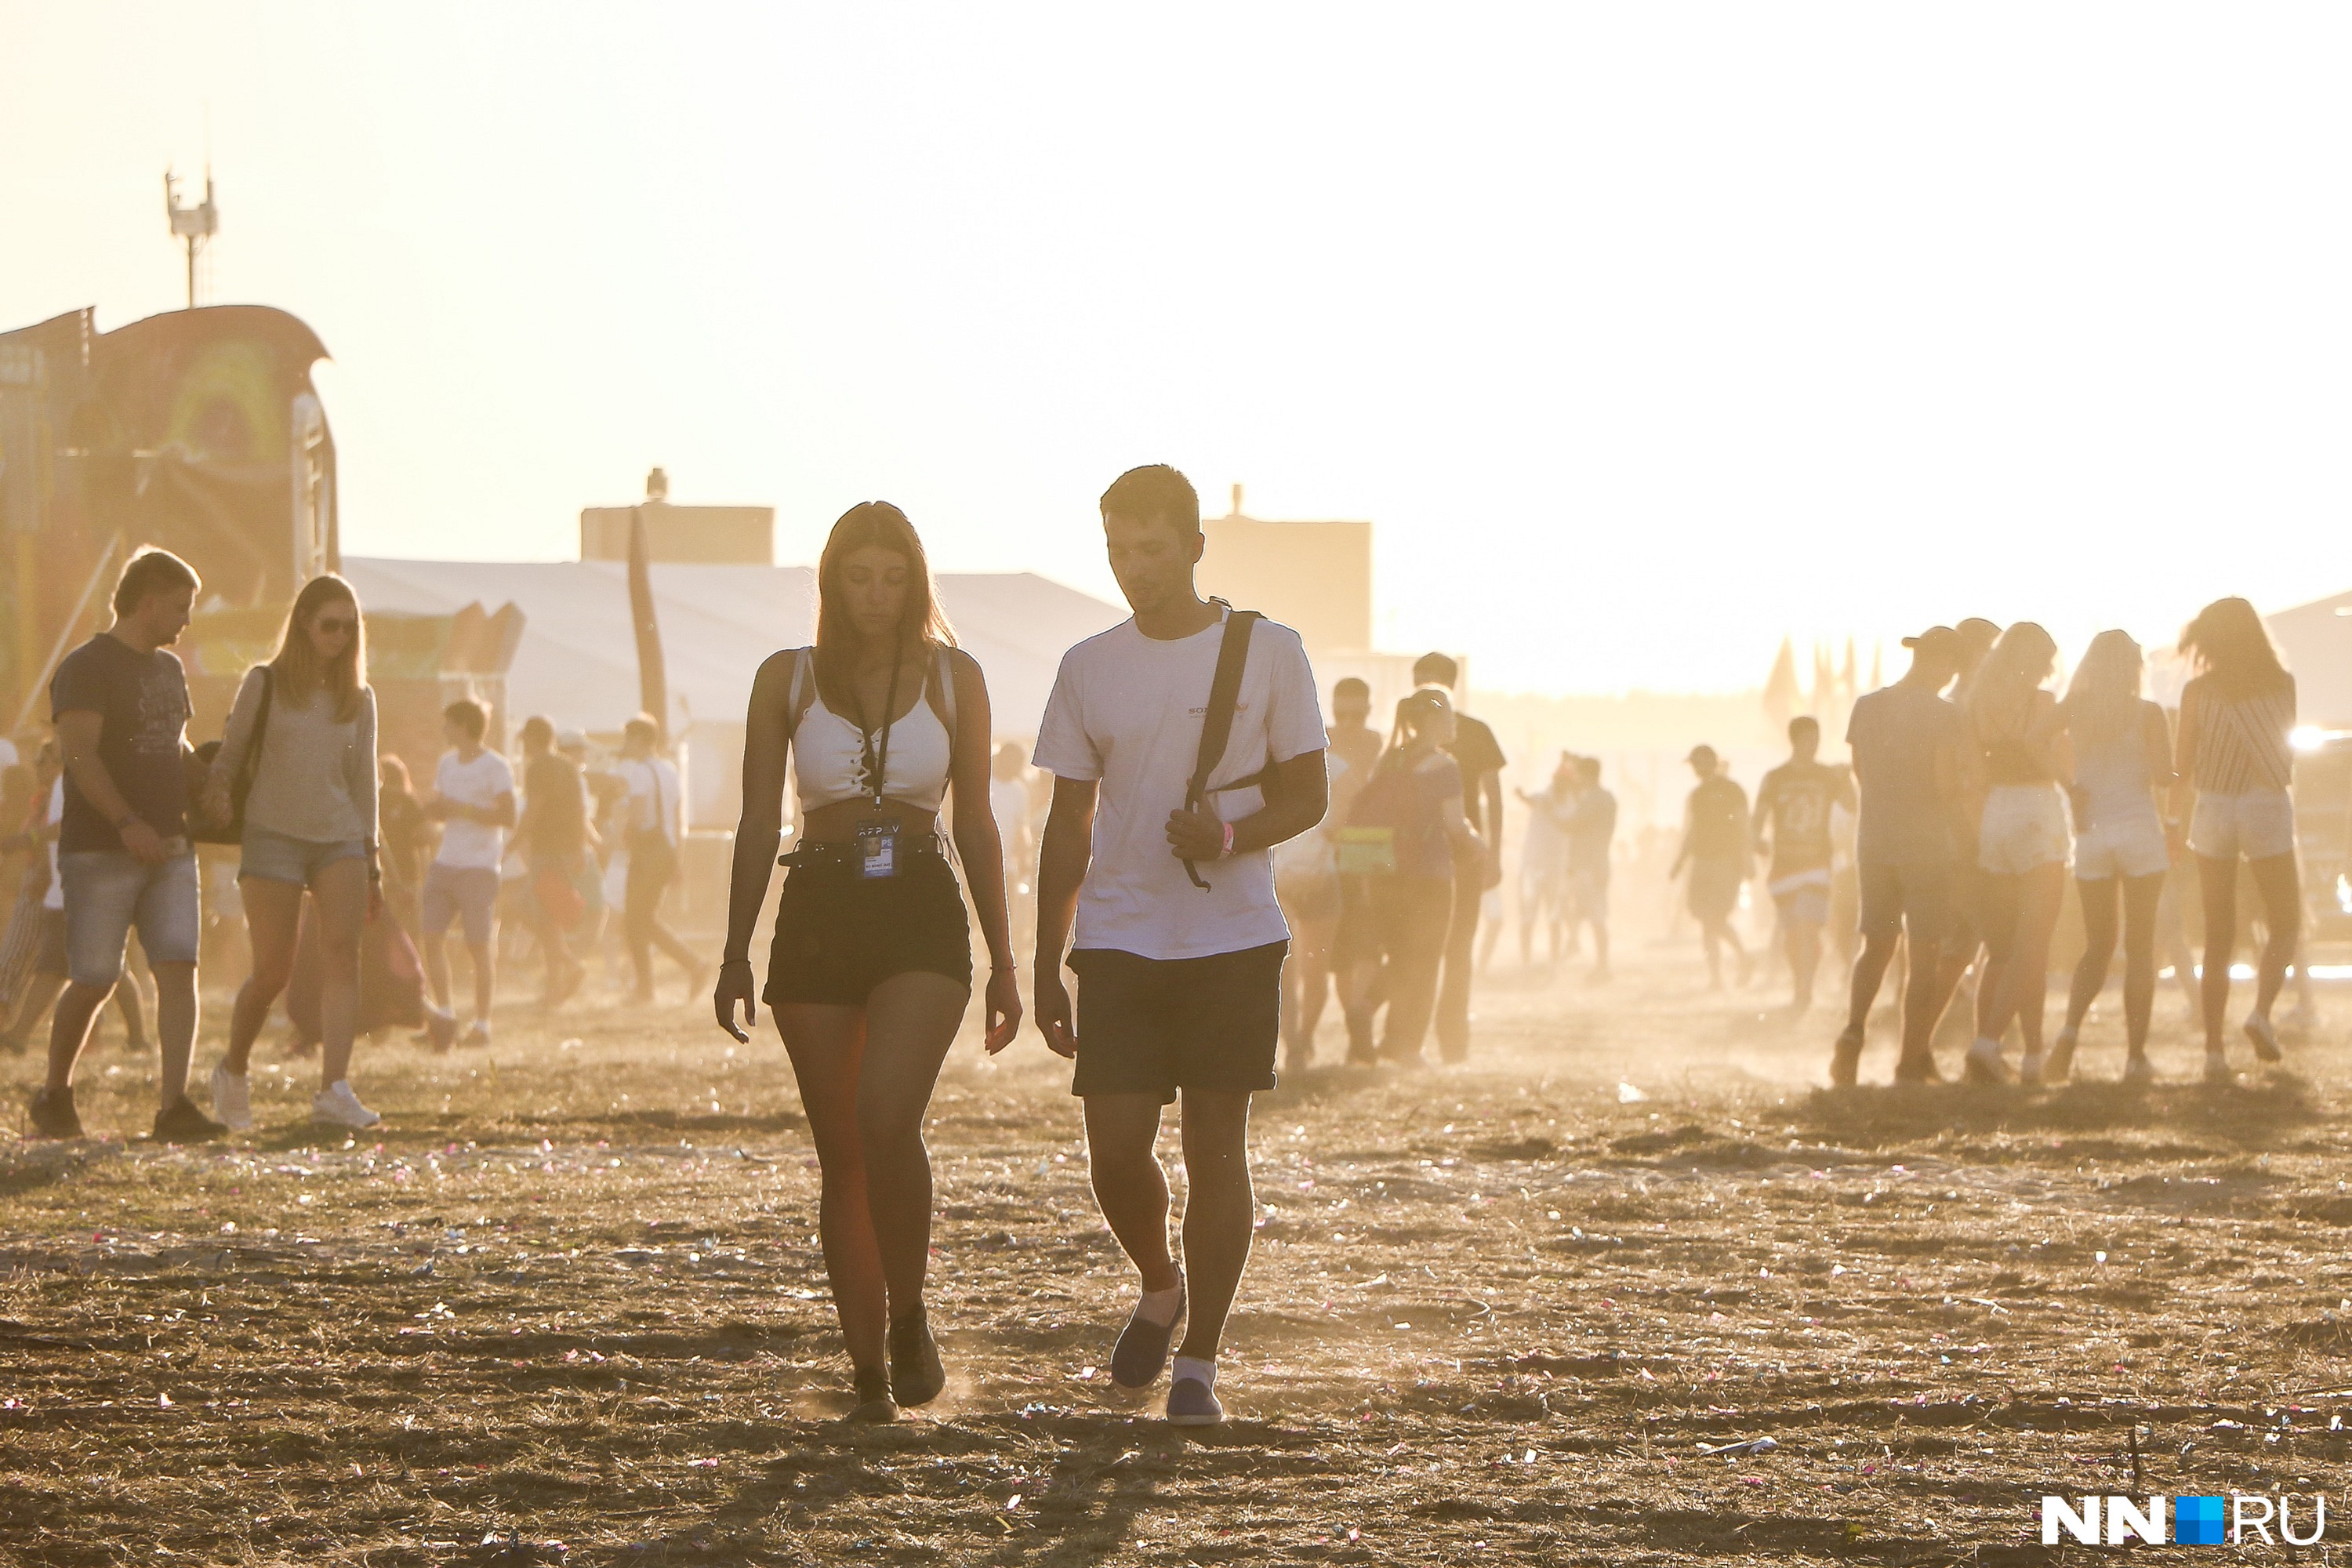 Фестиваль посетили около 52 тысяч человек. Зеленое поле под ногами превратилось в пыльную пустыню